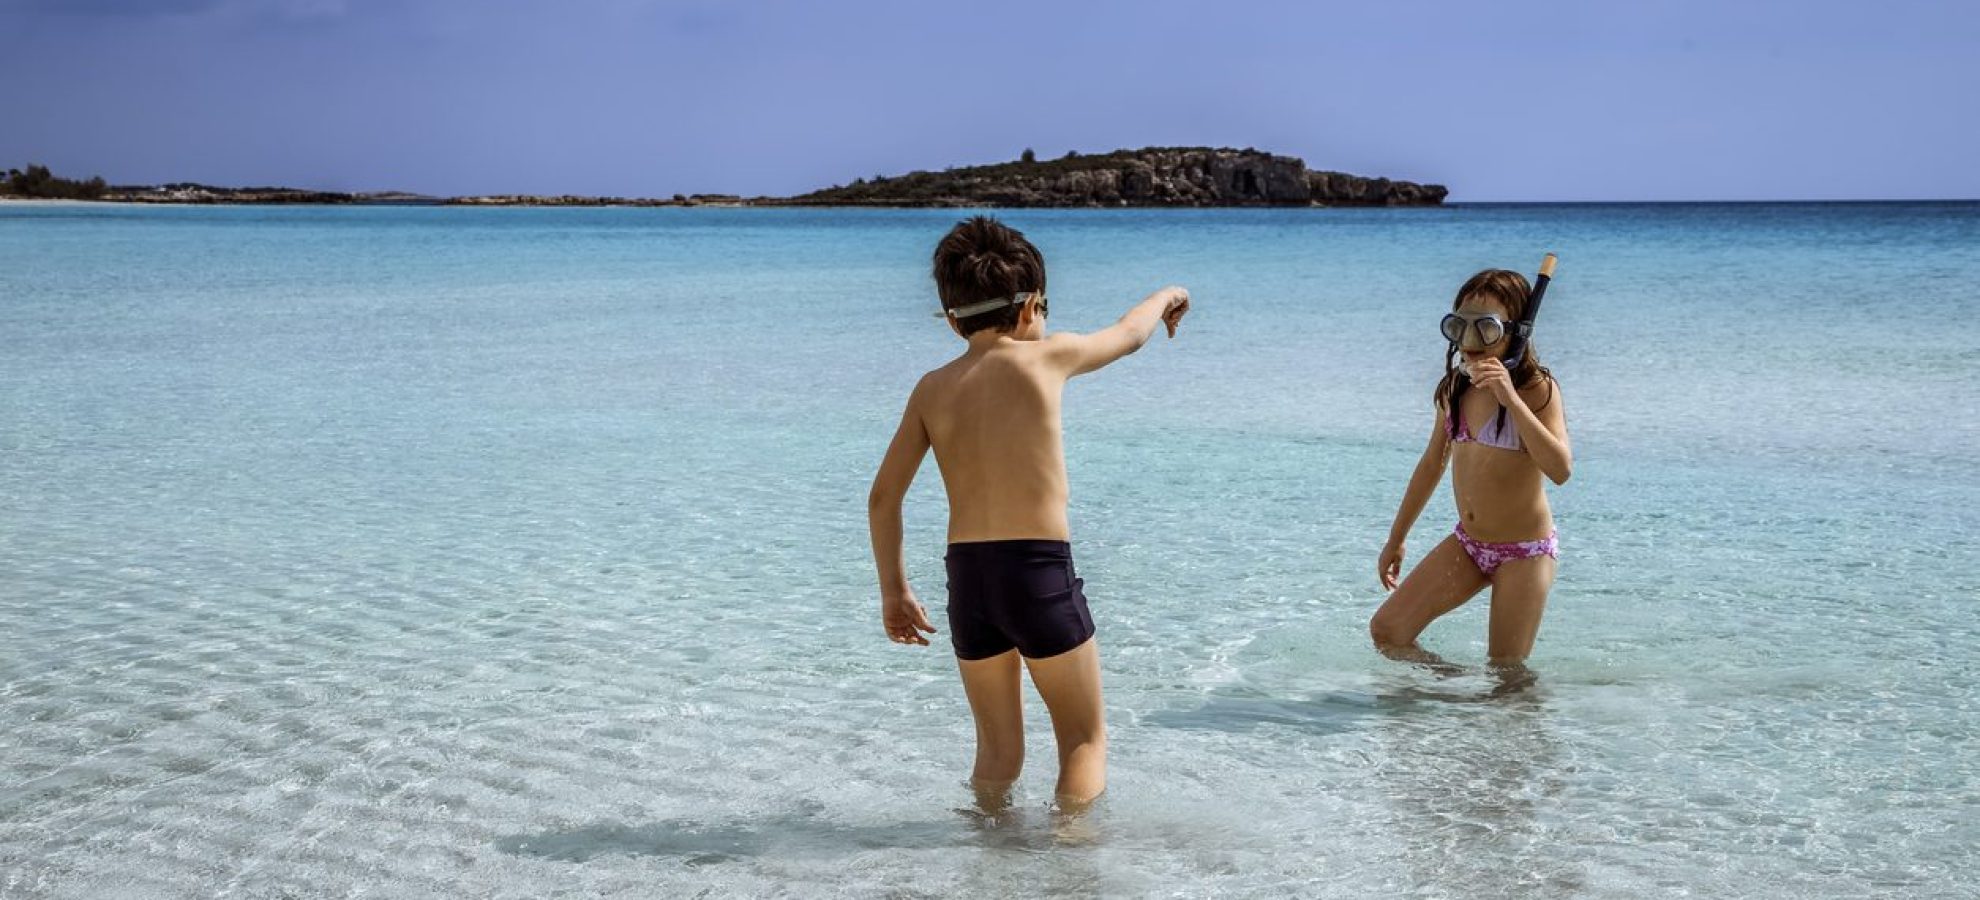 Vliegtickets-familie-kinderen-strand-Cyprus-Larnaca